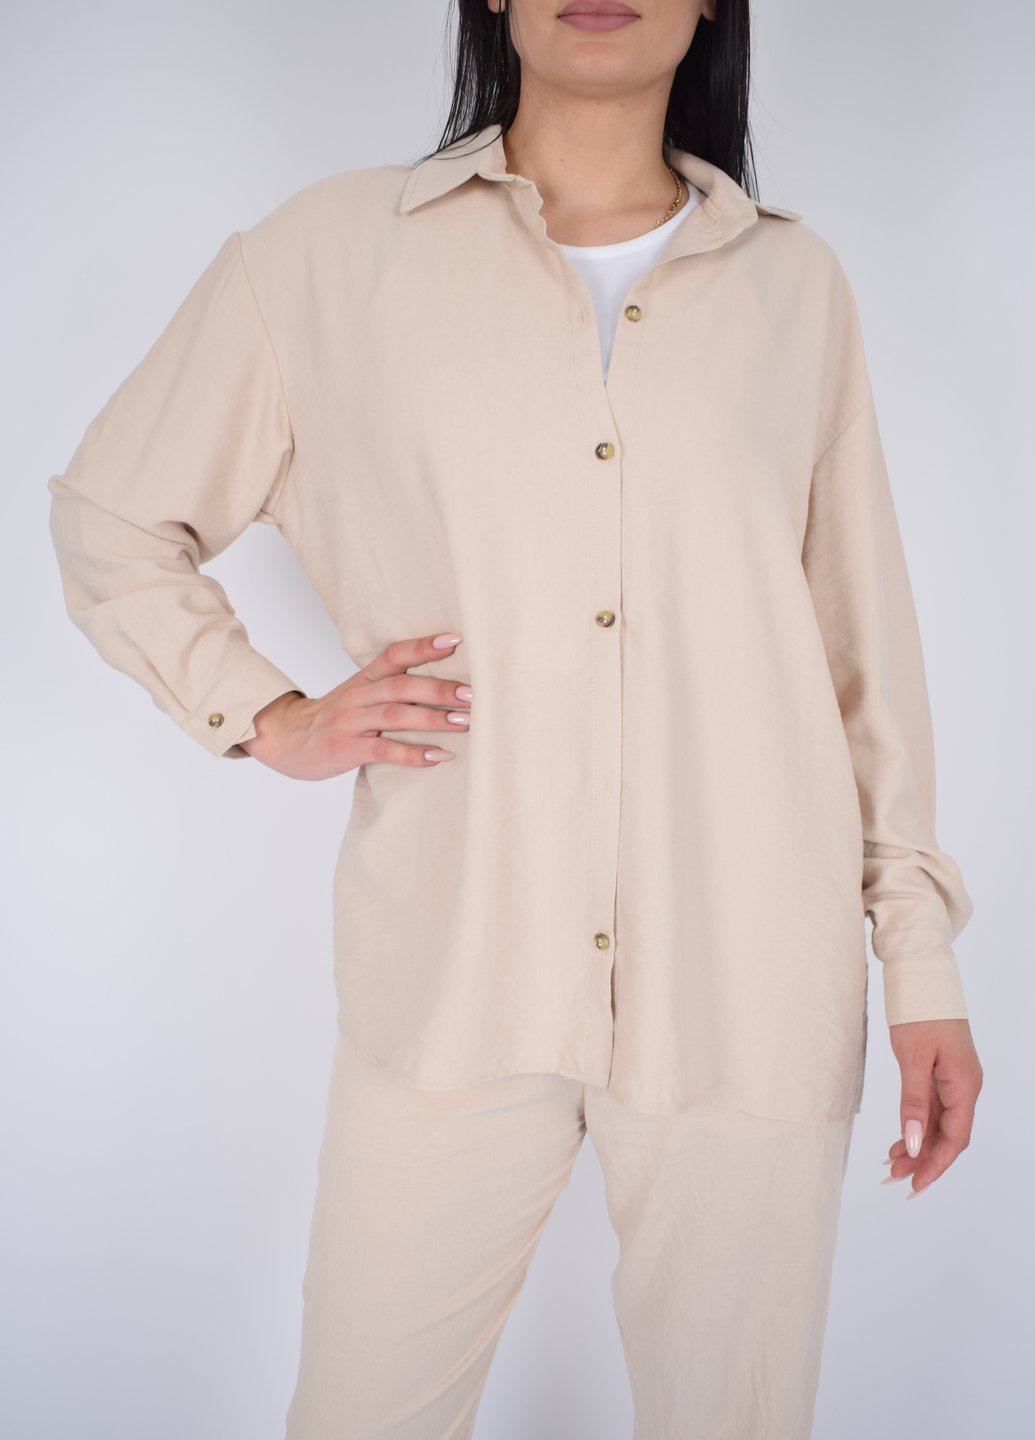 Купить Рубашка женская с длинным рукавом бежевого цвета из льна Merlini Беллуно 200000070, размер 42-44 в интернет-магазине